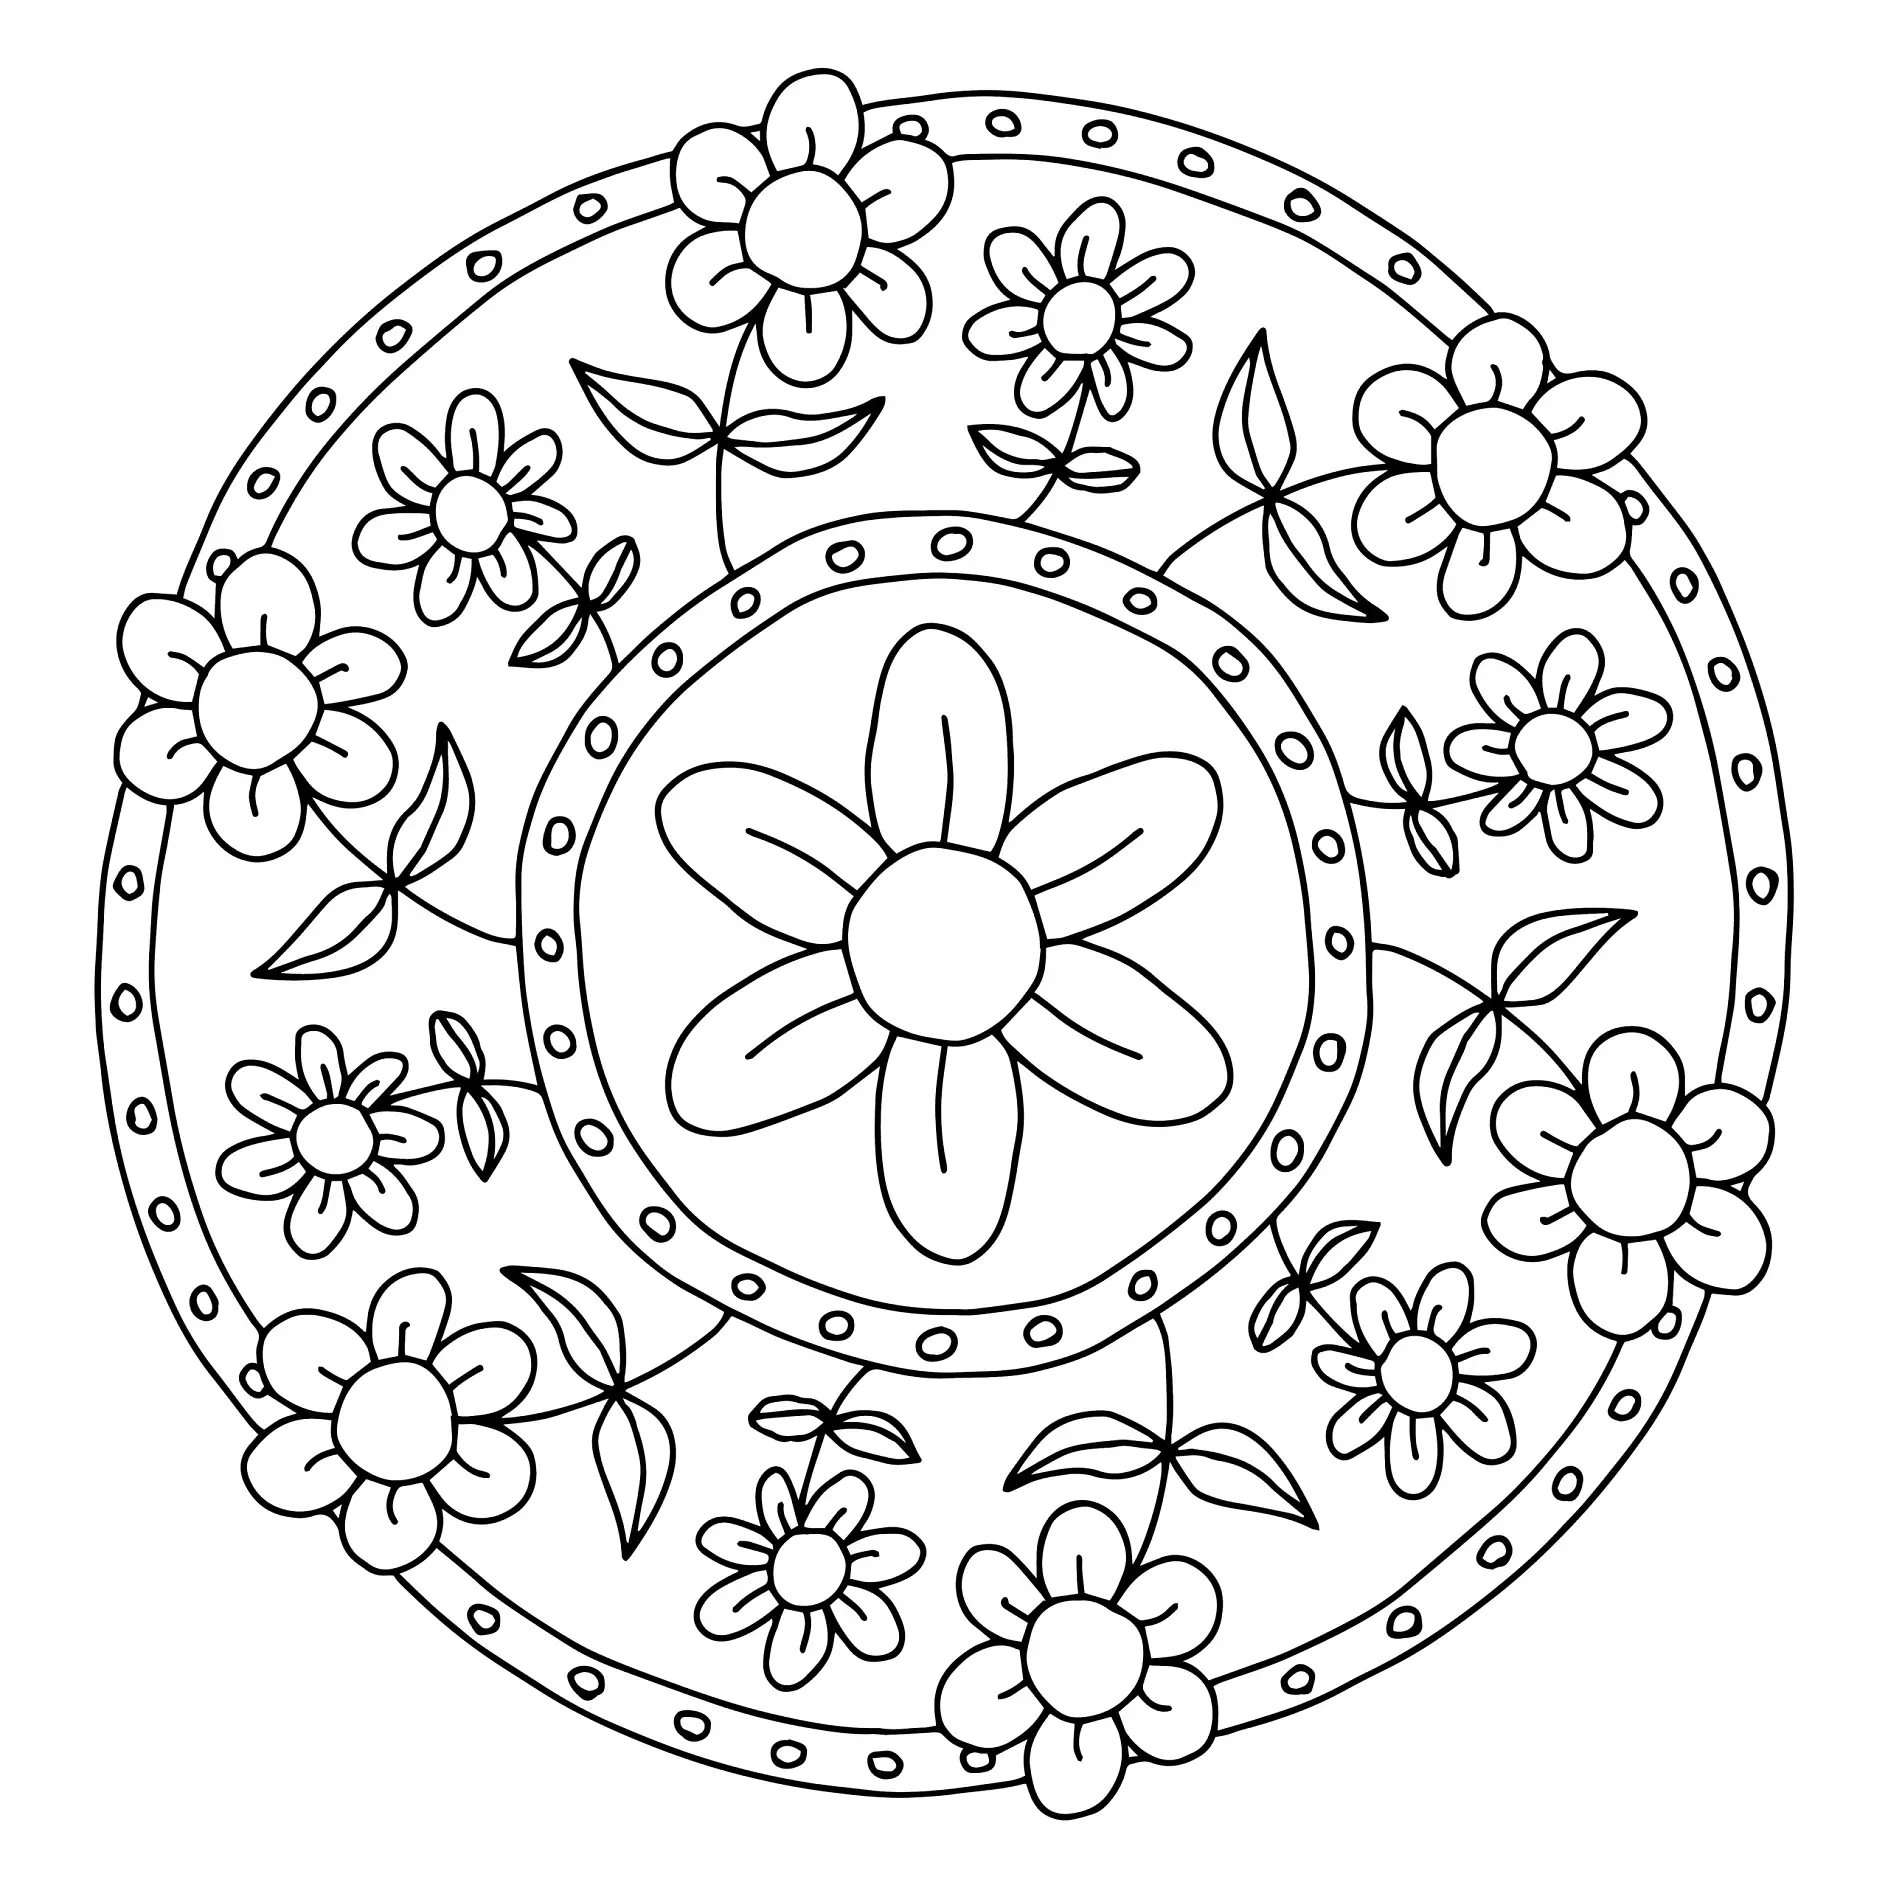 Ausmalbild Mandala mit einfachen Blumen und Kreisen